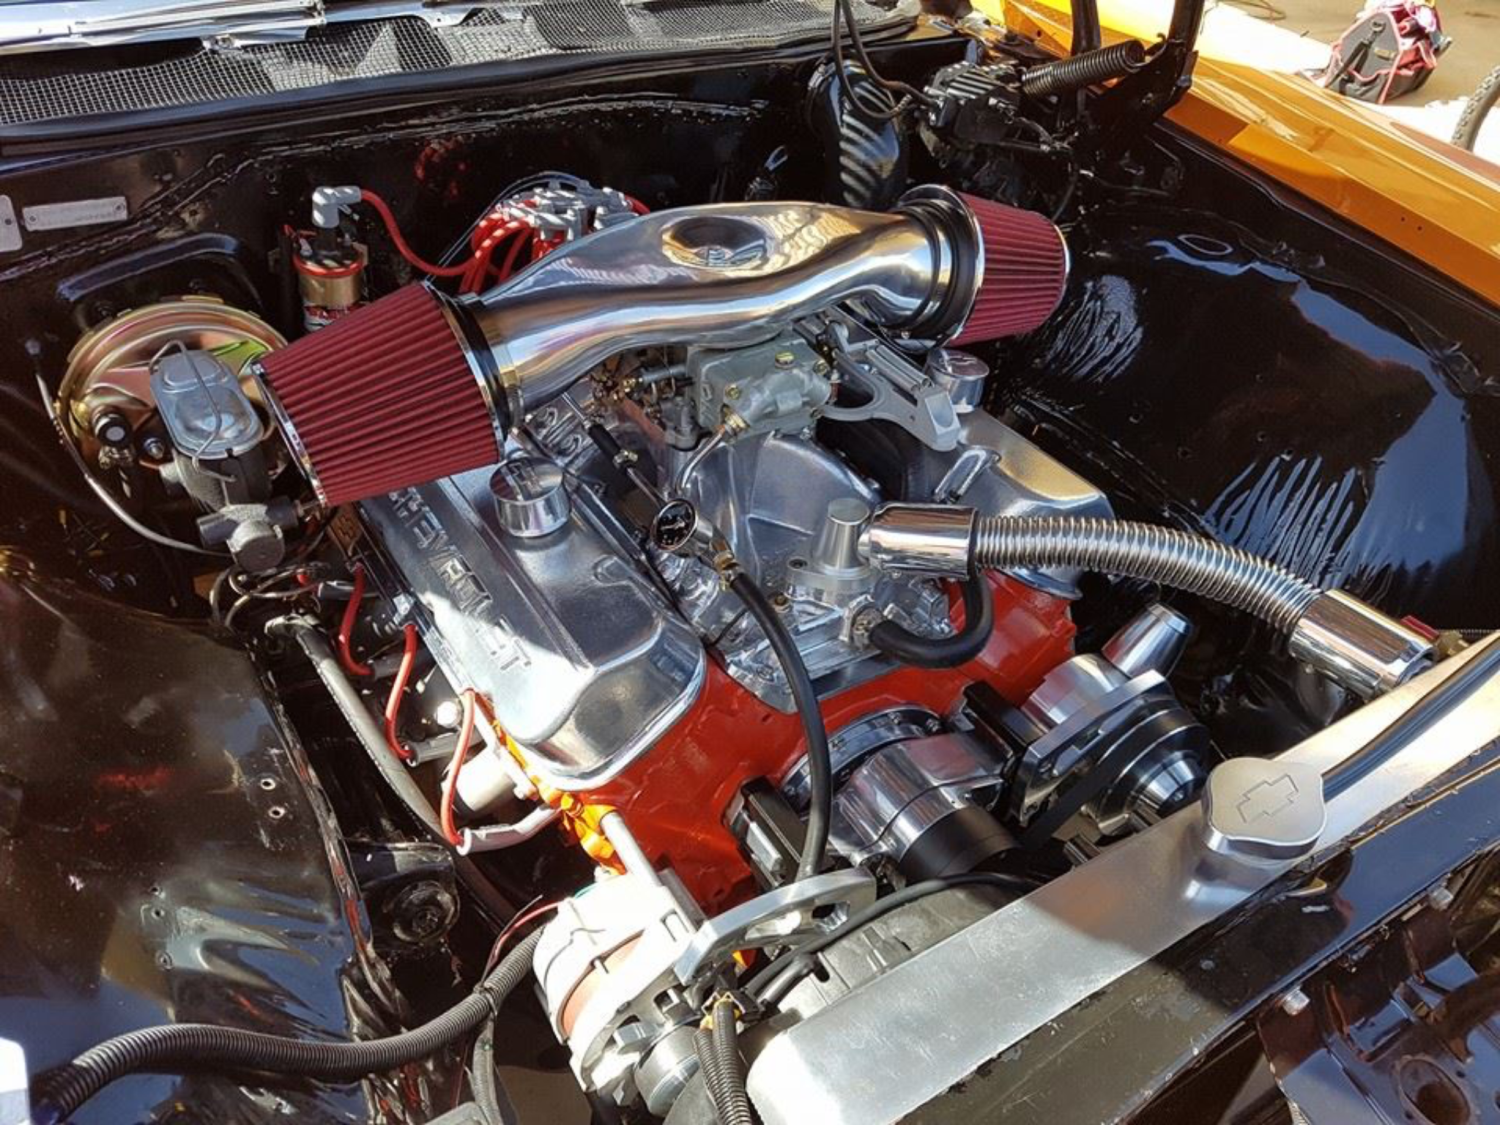 1968 Chevrolet IMPALA